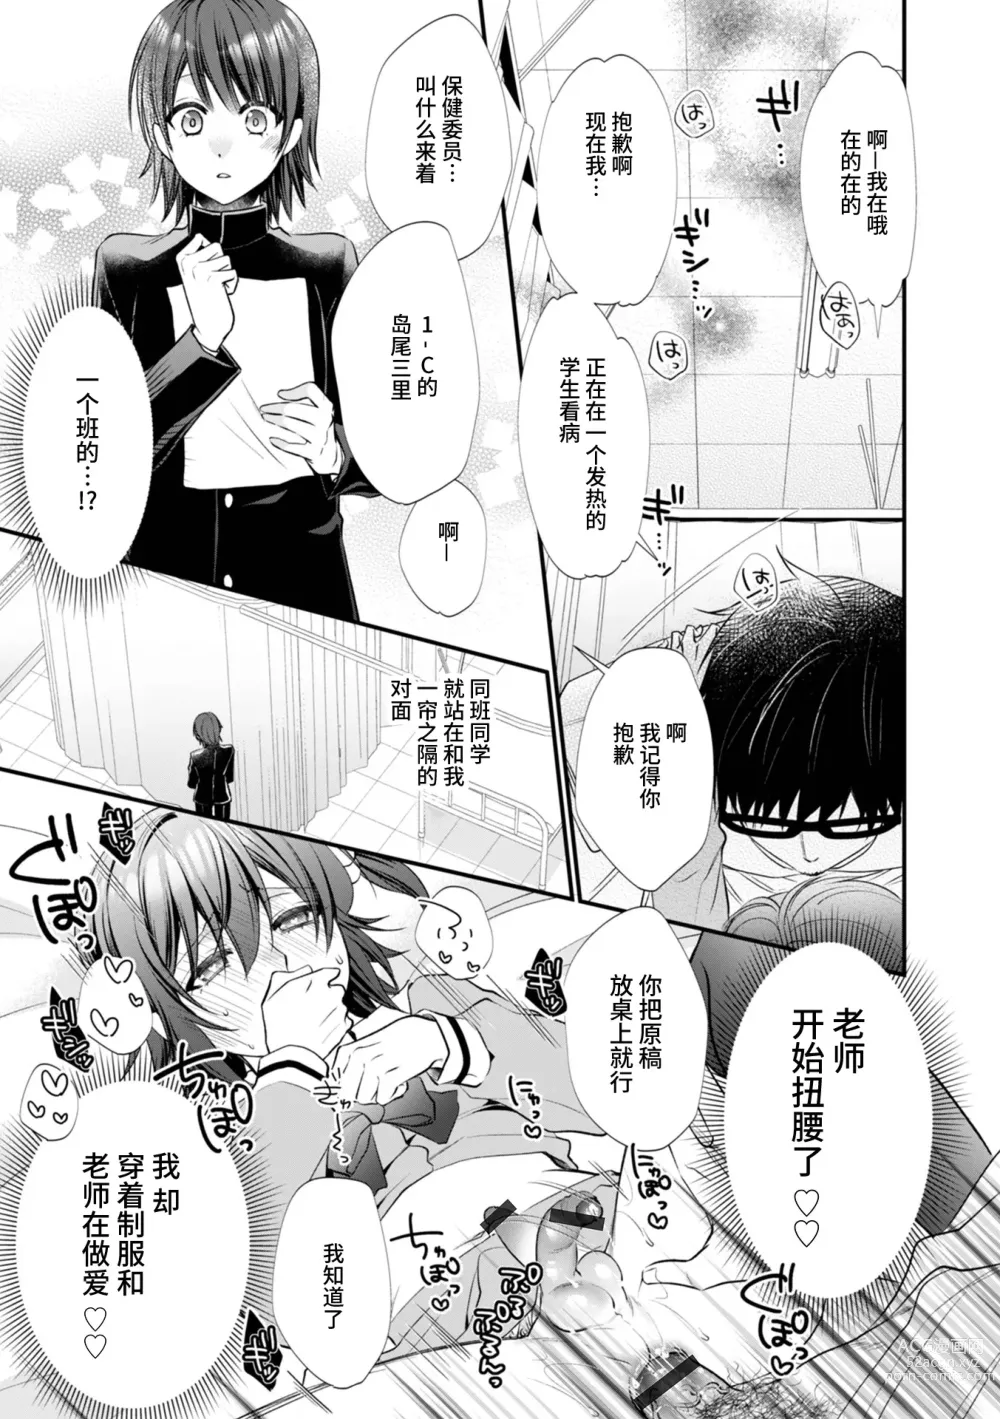 Page 11 of manga Hatsujou Nemuri Hime - Estrus sleeping princess